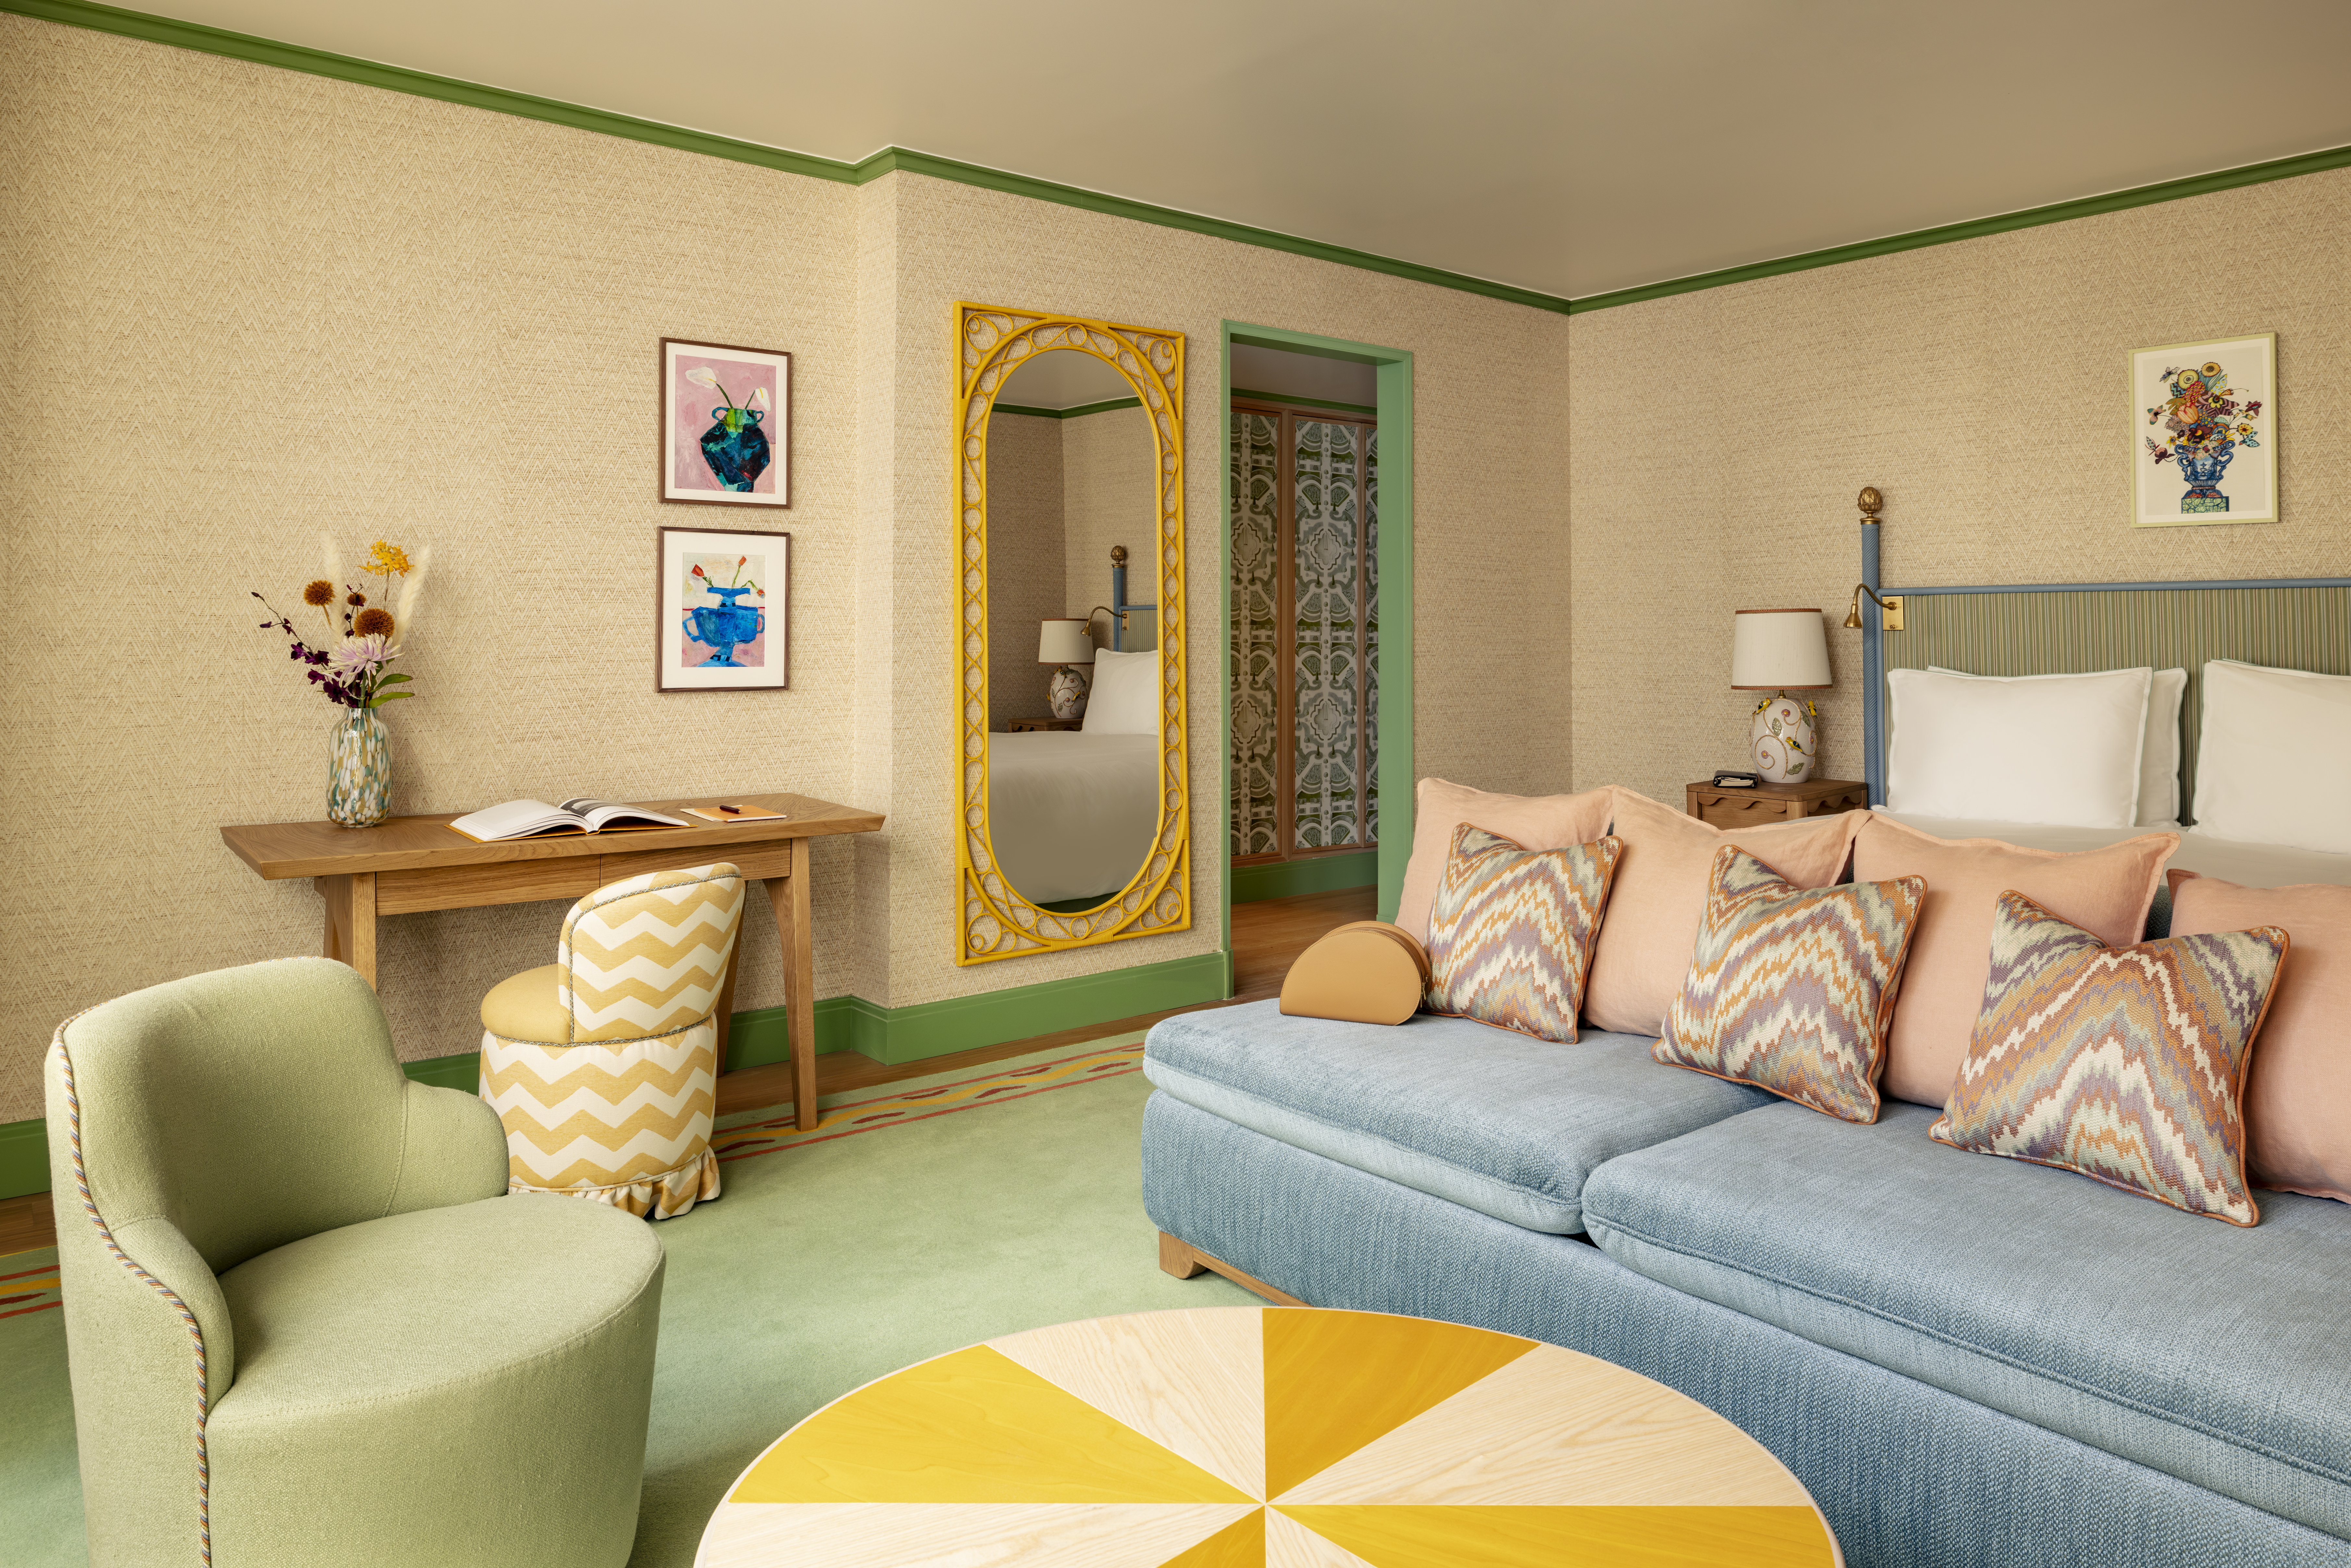 Quarto com piso verde, sofá azul e pufe branco e amarelo.